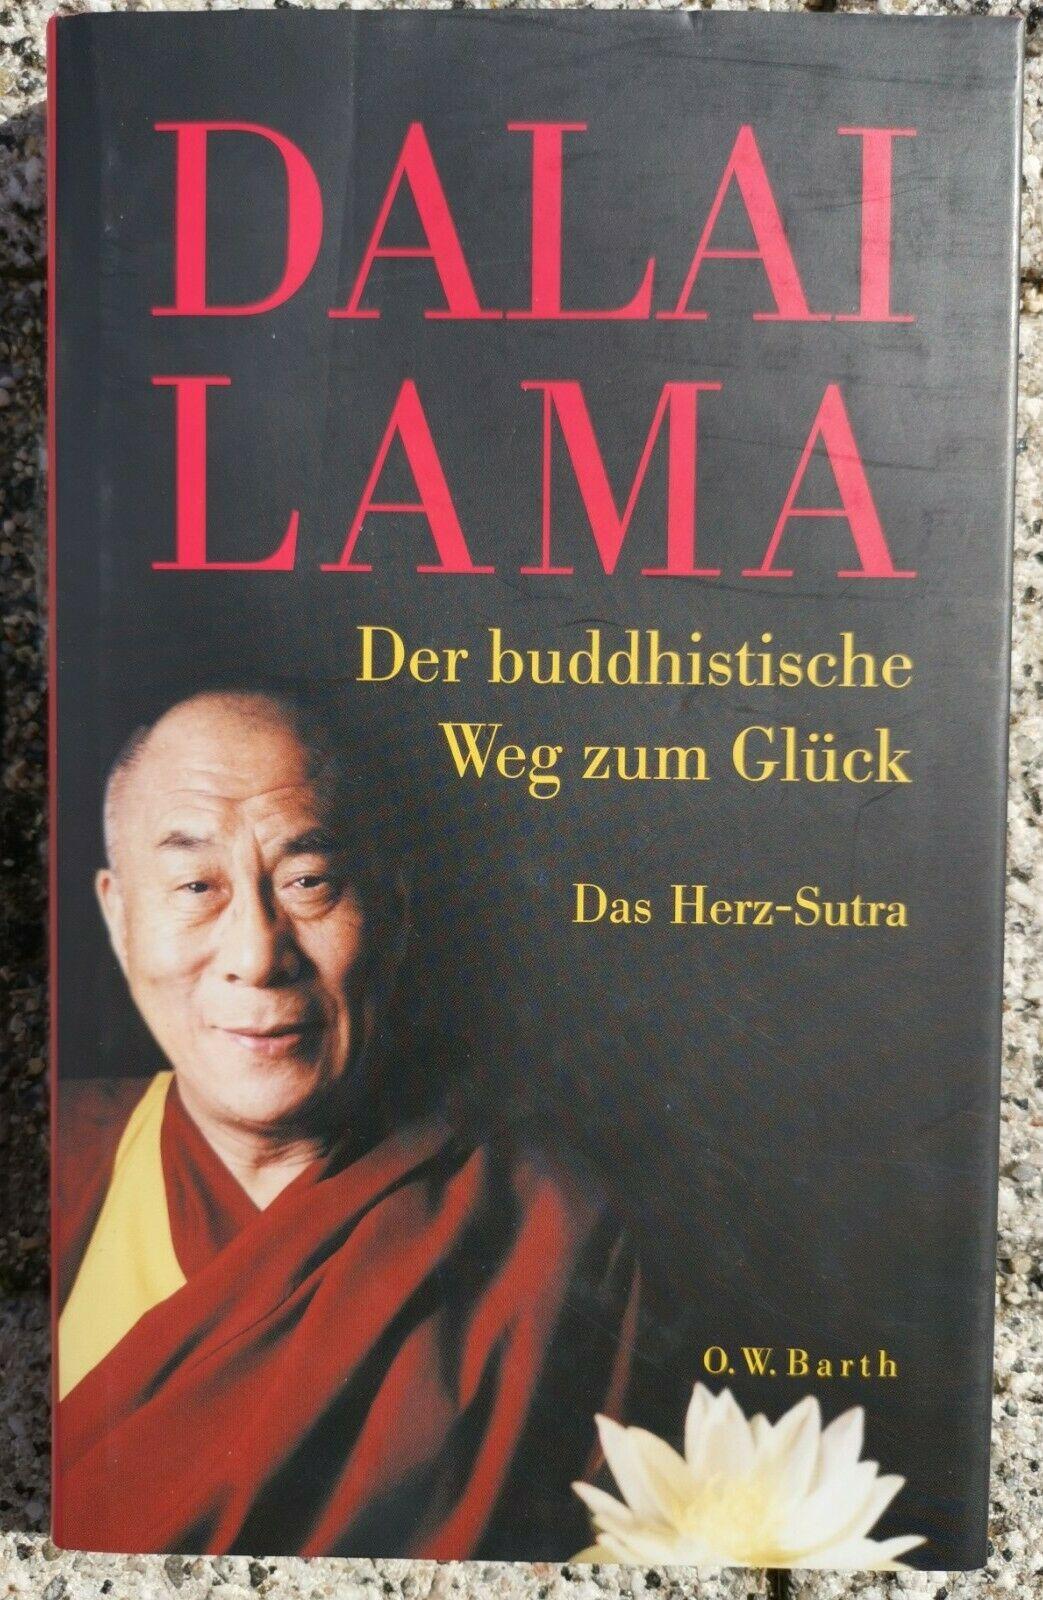 Der buddhistische Weg zum Gluck: Das Herz-Sutra [hardcover]